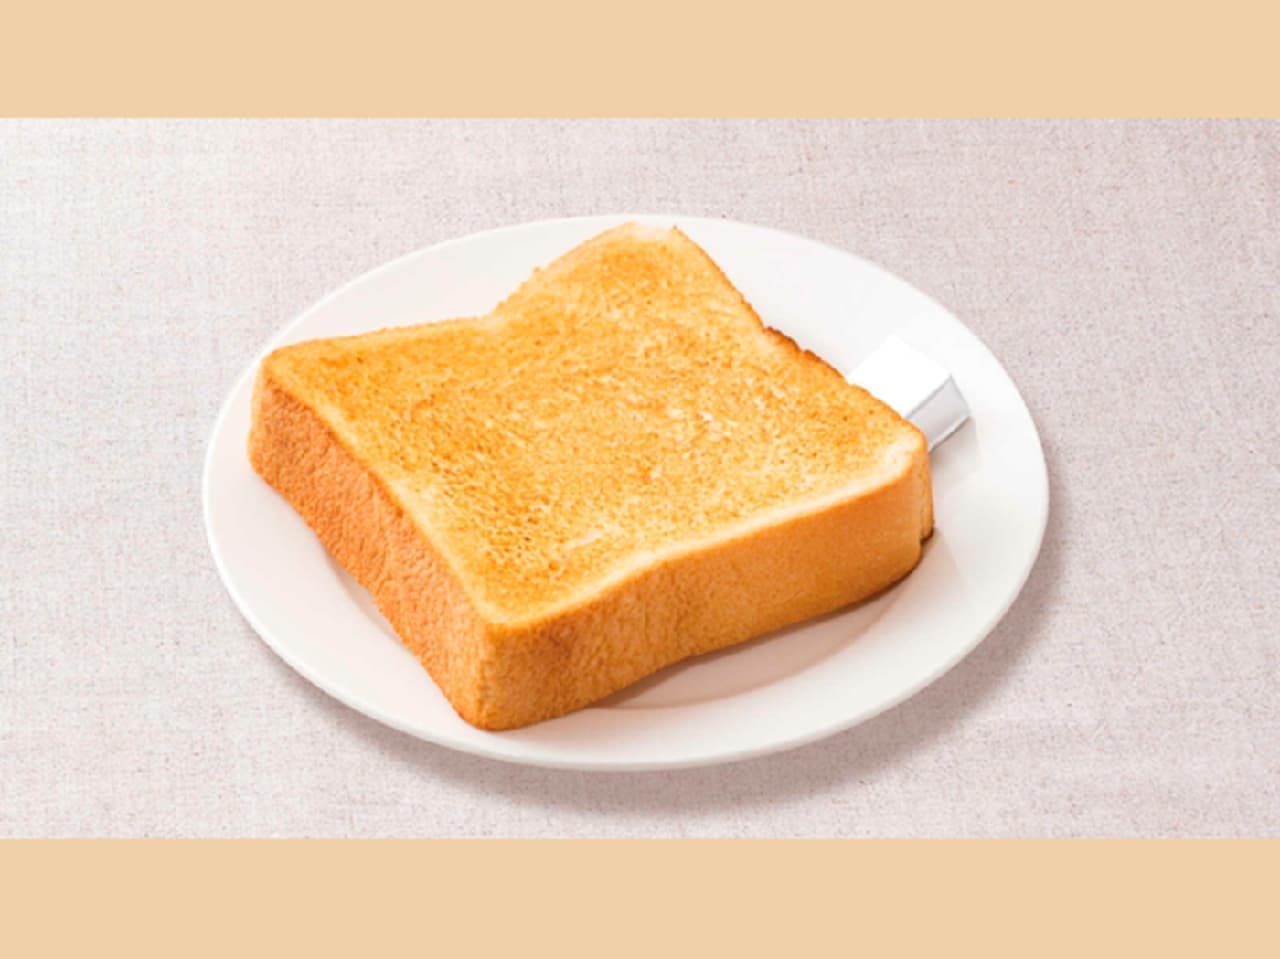 Gusto "Toast